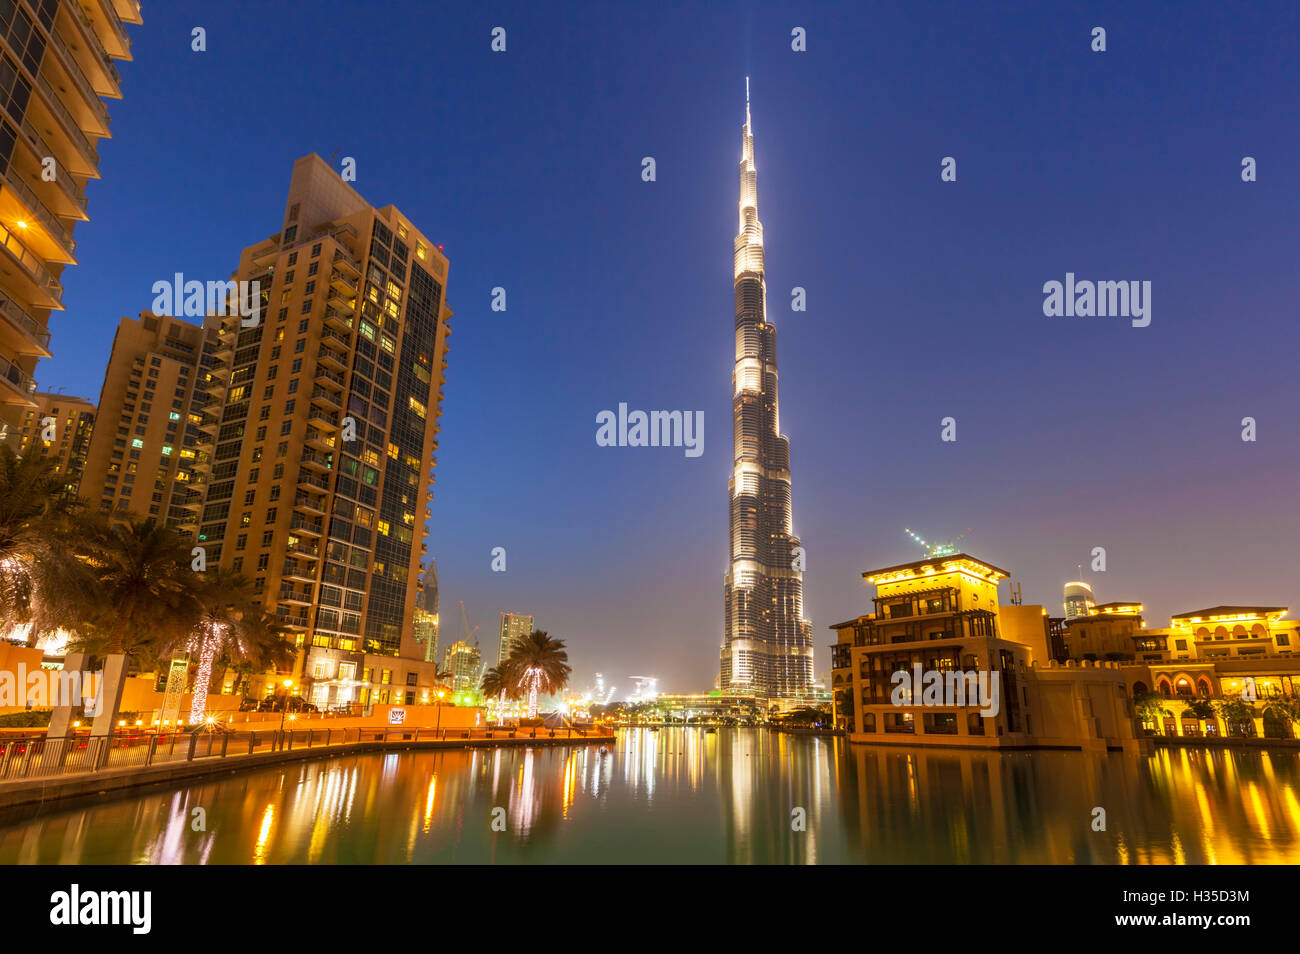 Dubai Burj Khalifa and skyscrapers at night, Dubai City, United Arab Emirates, Middle East Stock Photo